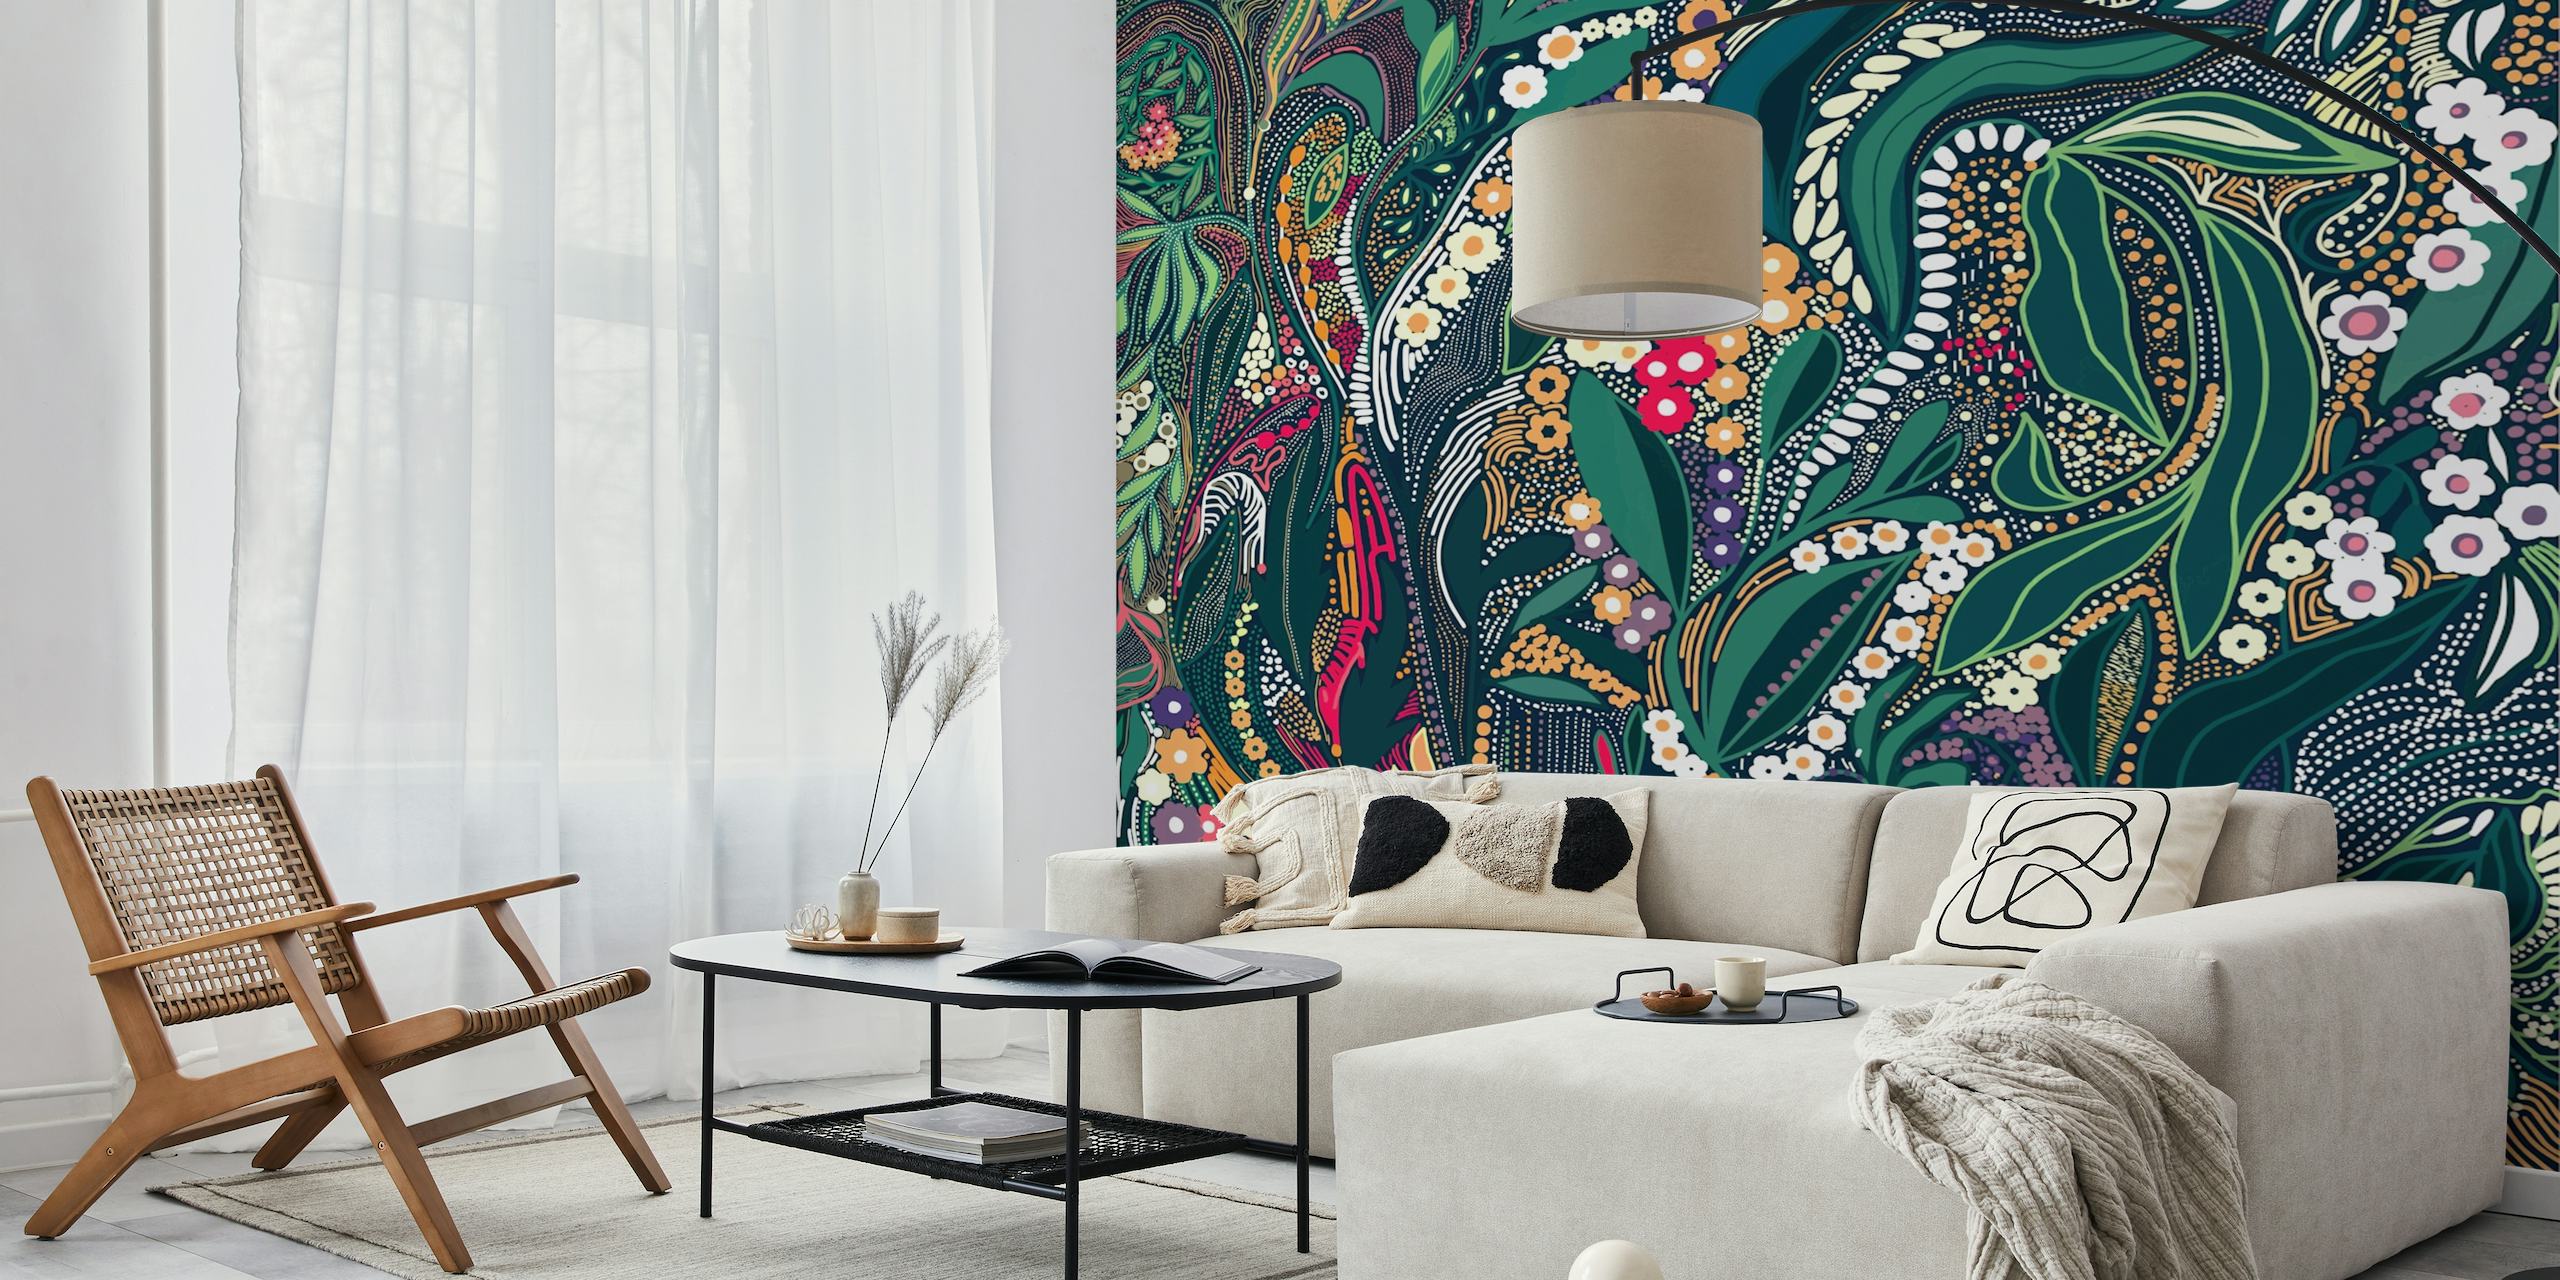 Muurschildering met een ingewikkeld ontwerp van bladeren, bloemen en patronen in weelderige kleuren.